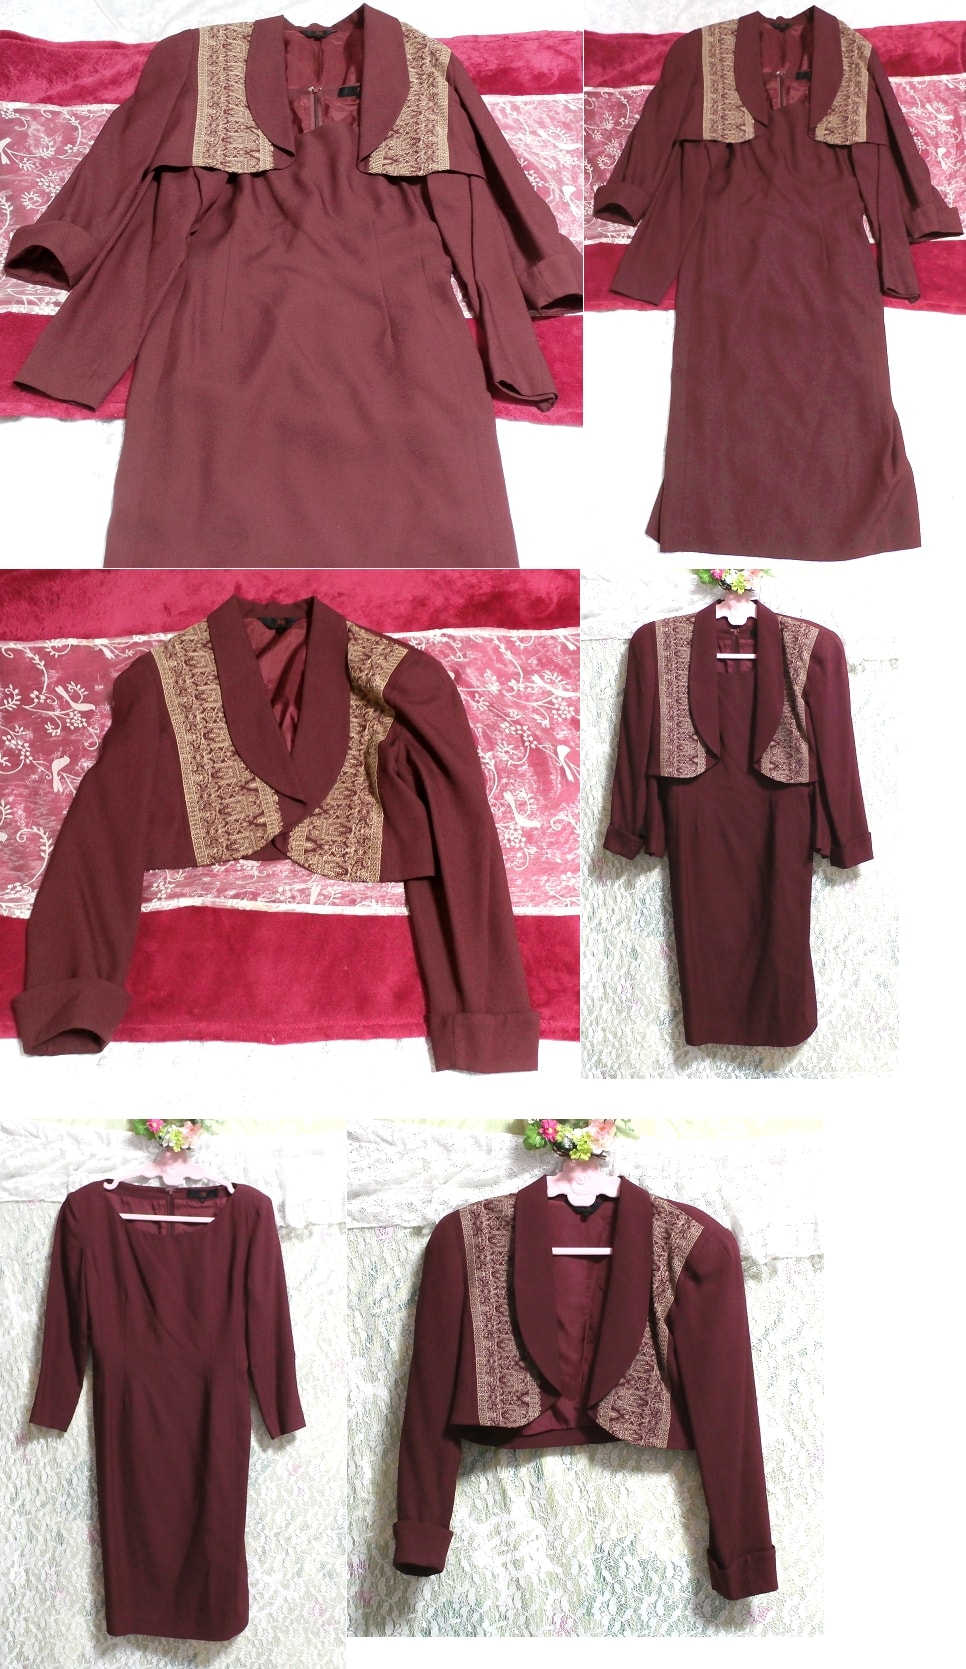 와인 레드 레드 퍼플 포멀 슈트 드레스와 재킷 겉옷, 숙녀 패션, 공식적인, 정장, 앙상블